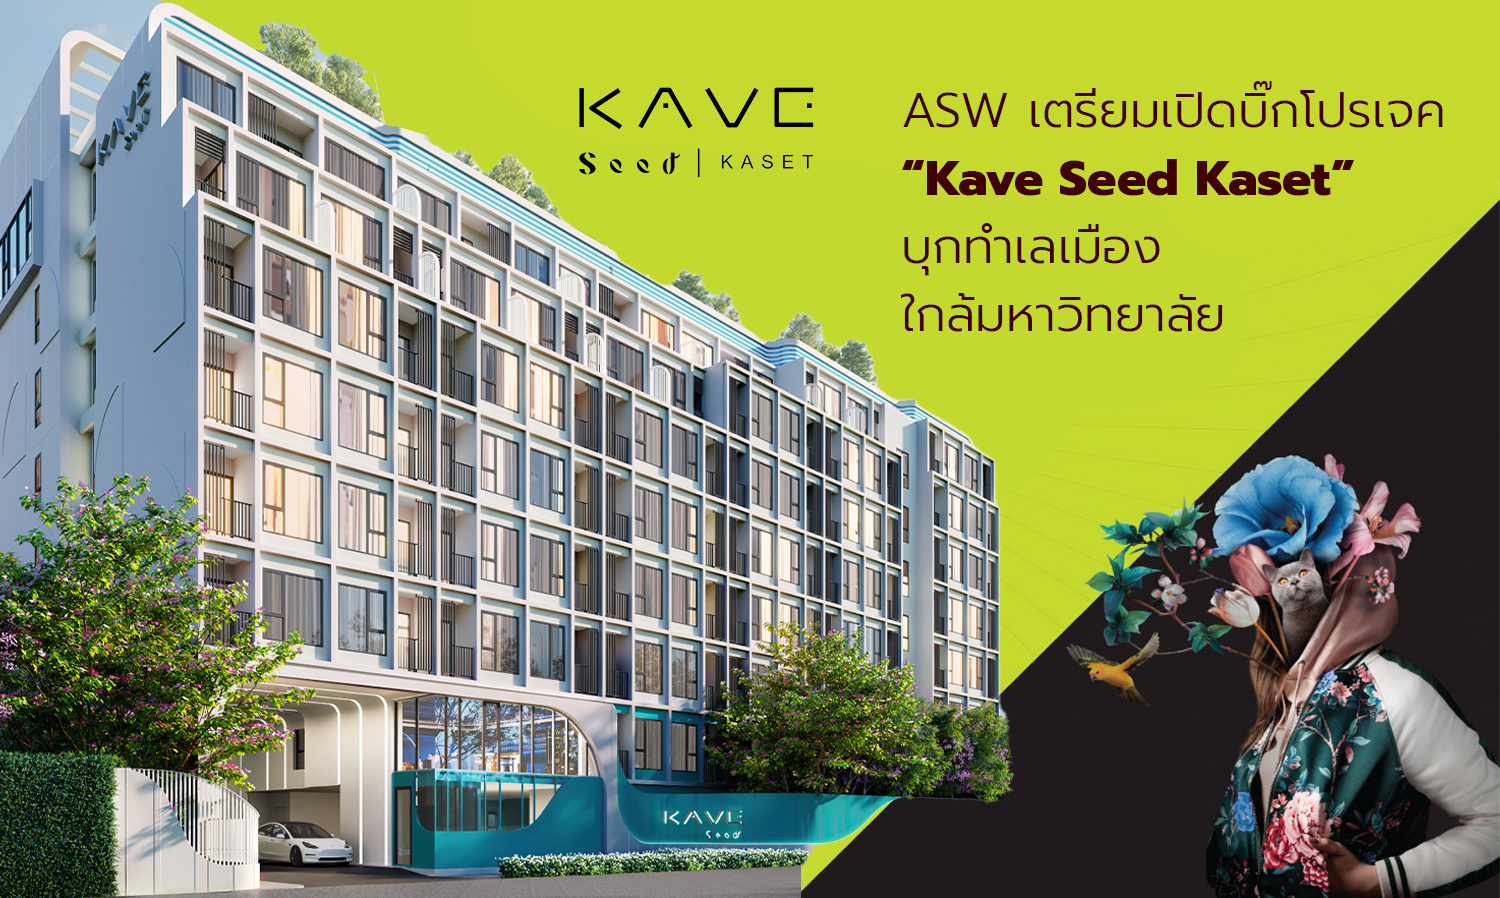 ASW เตรียมเปิดบิ๊กโปรเจค “Kave Seed Kaset” บุกทำเลเมืองใกล้มหาวิทยาลัย